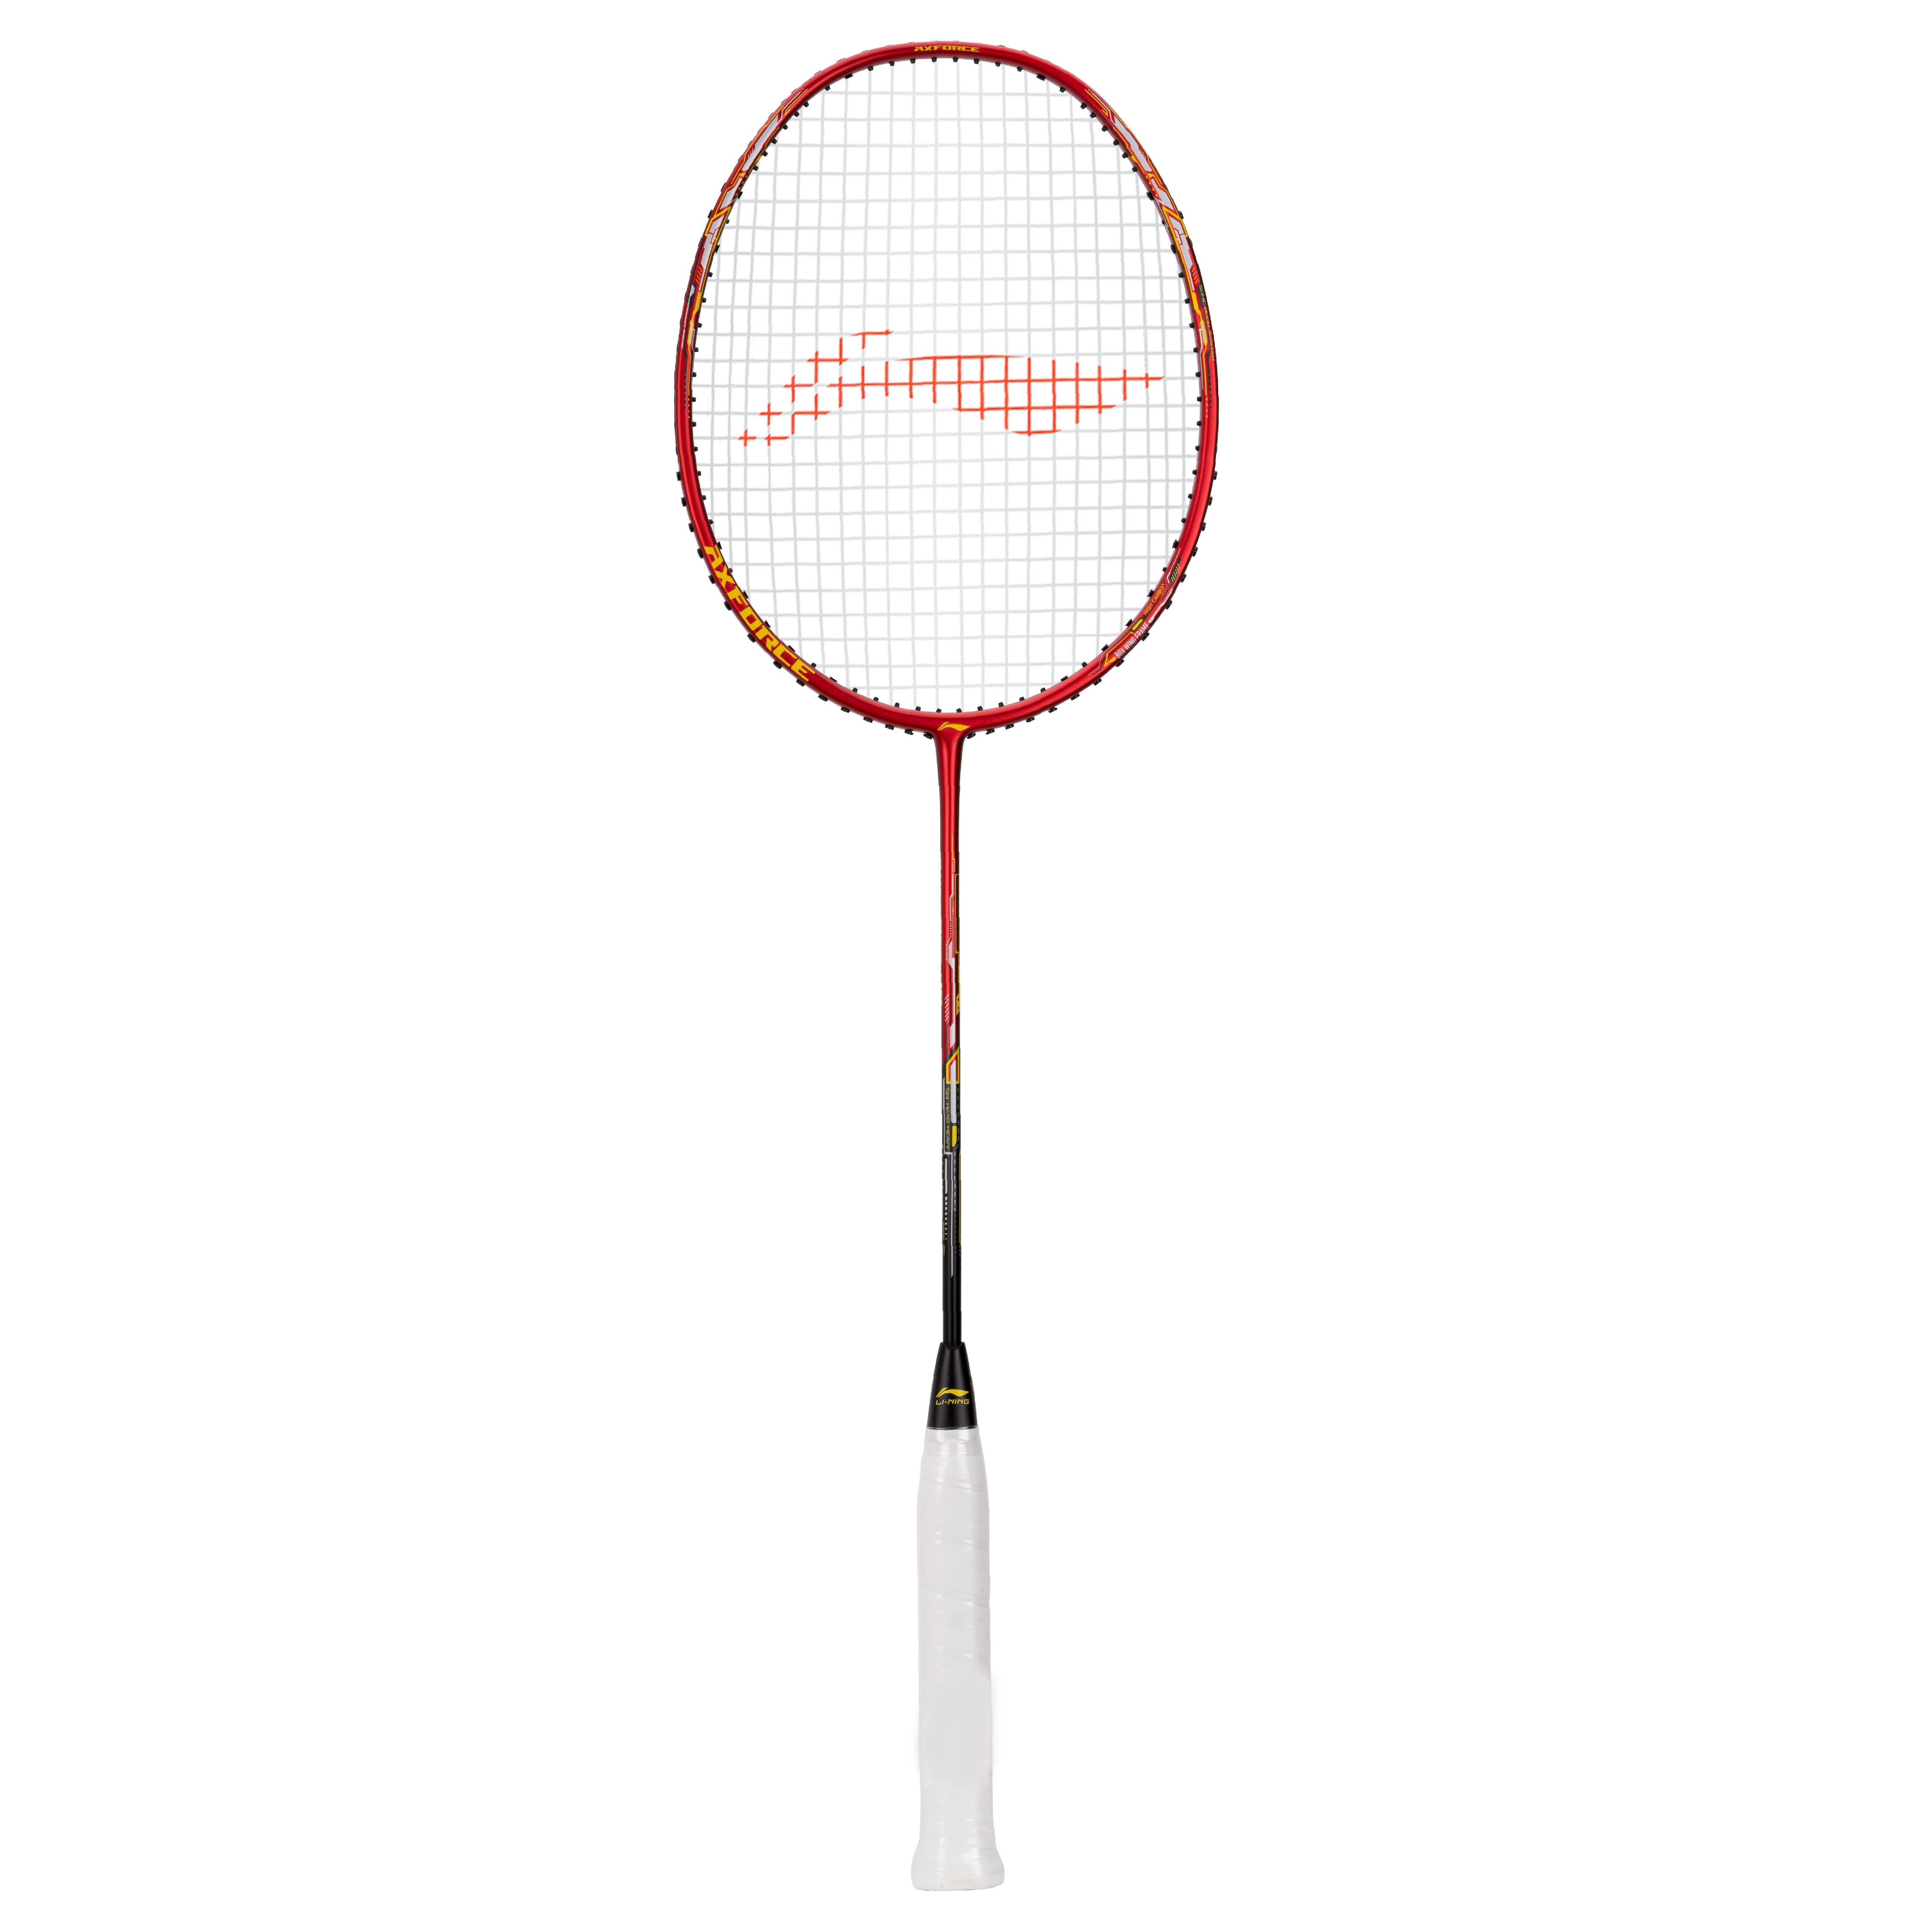 LI-NING AXFORCE 20 Badminton Racket